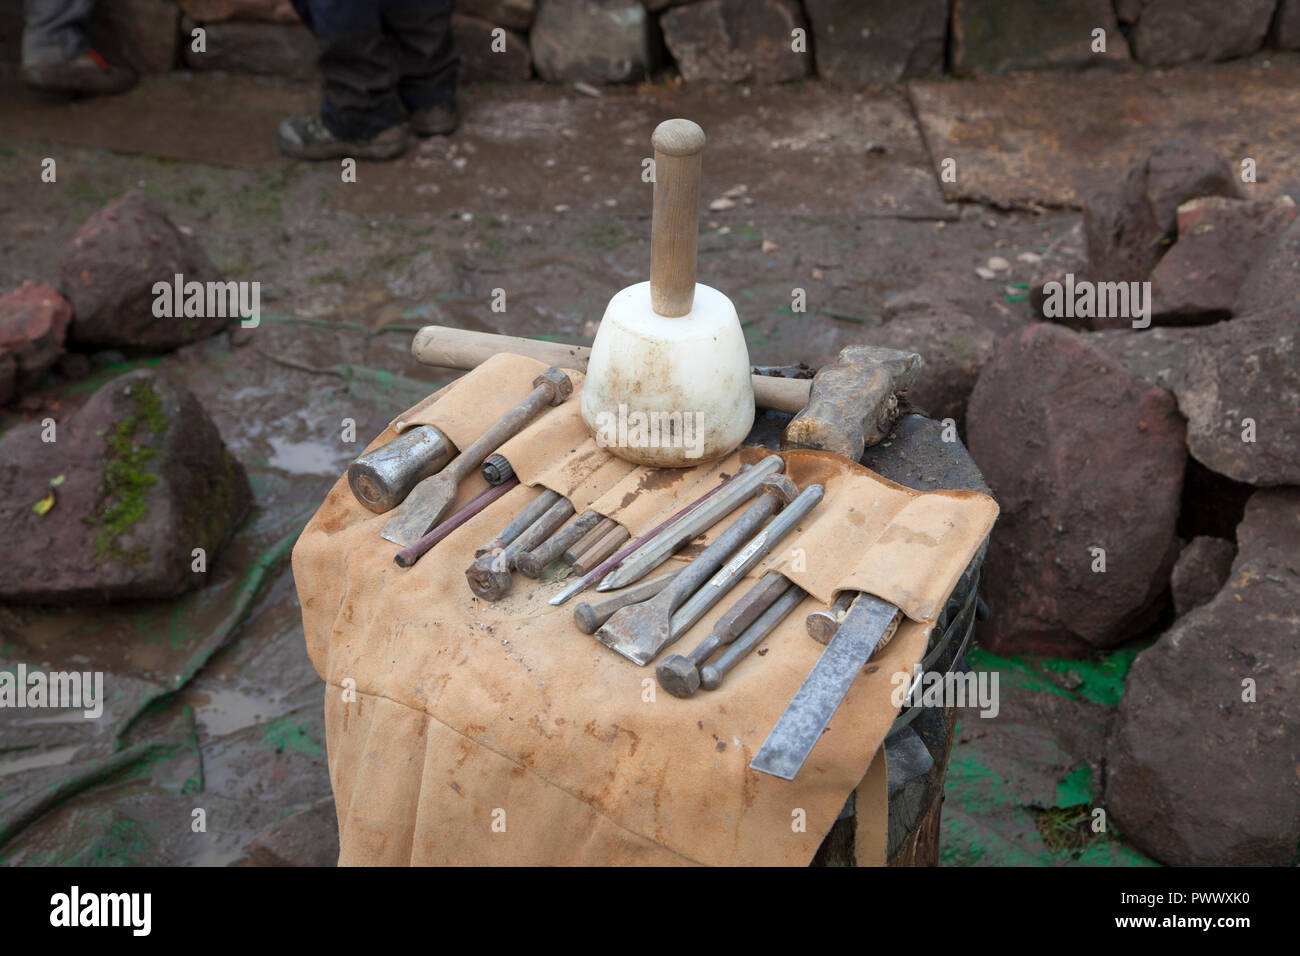 Steinbearbeitung Werkzeuge einschließlich, Hammer, Hammer, Meißel in einer  Tragetasche Stockfotografie - Alamy